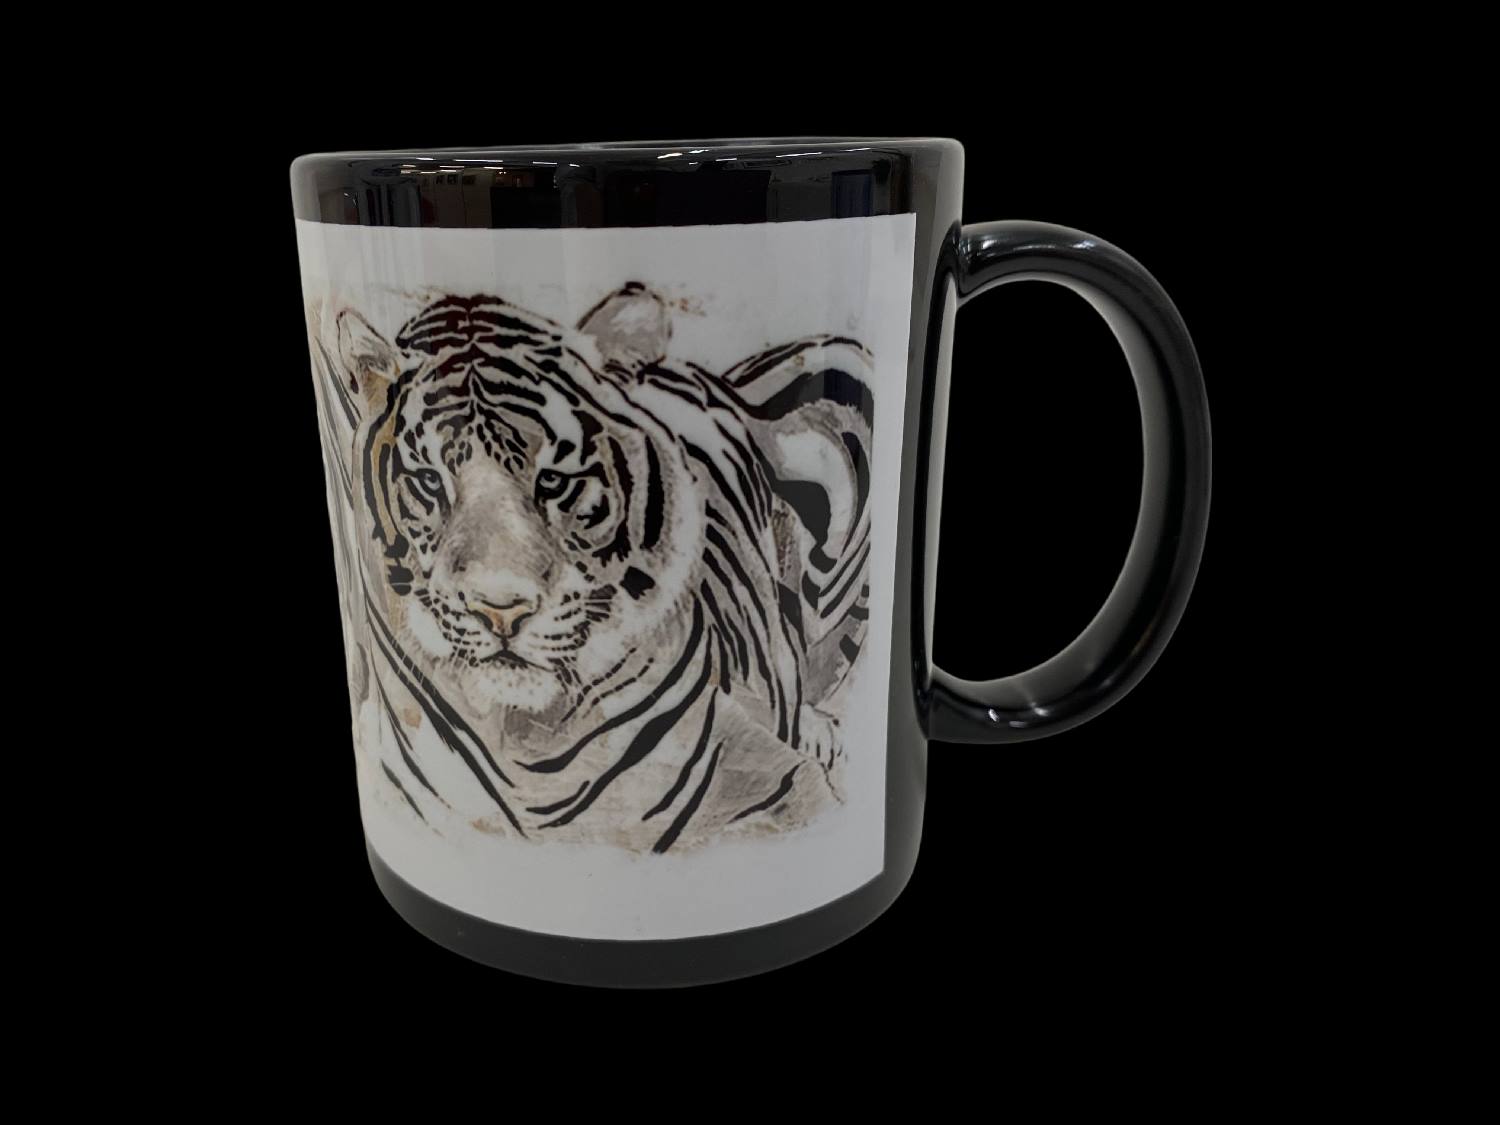 Porzellantasse "Tiger"30cl schwarz